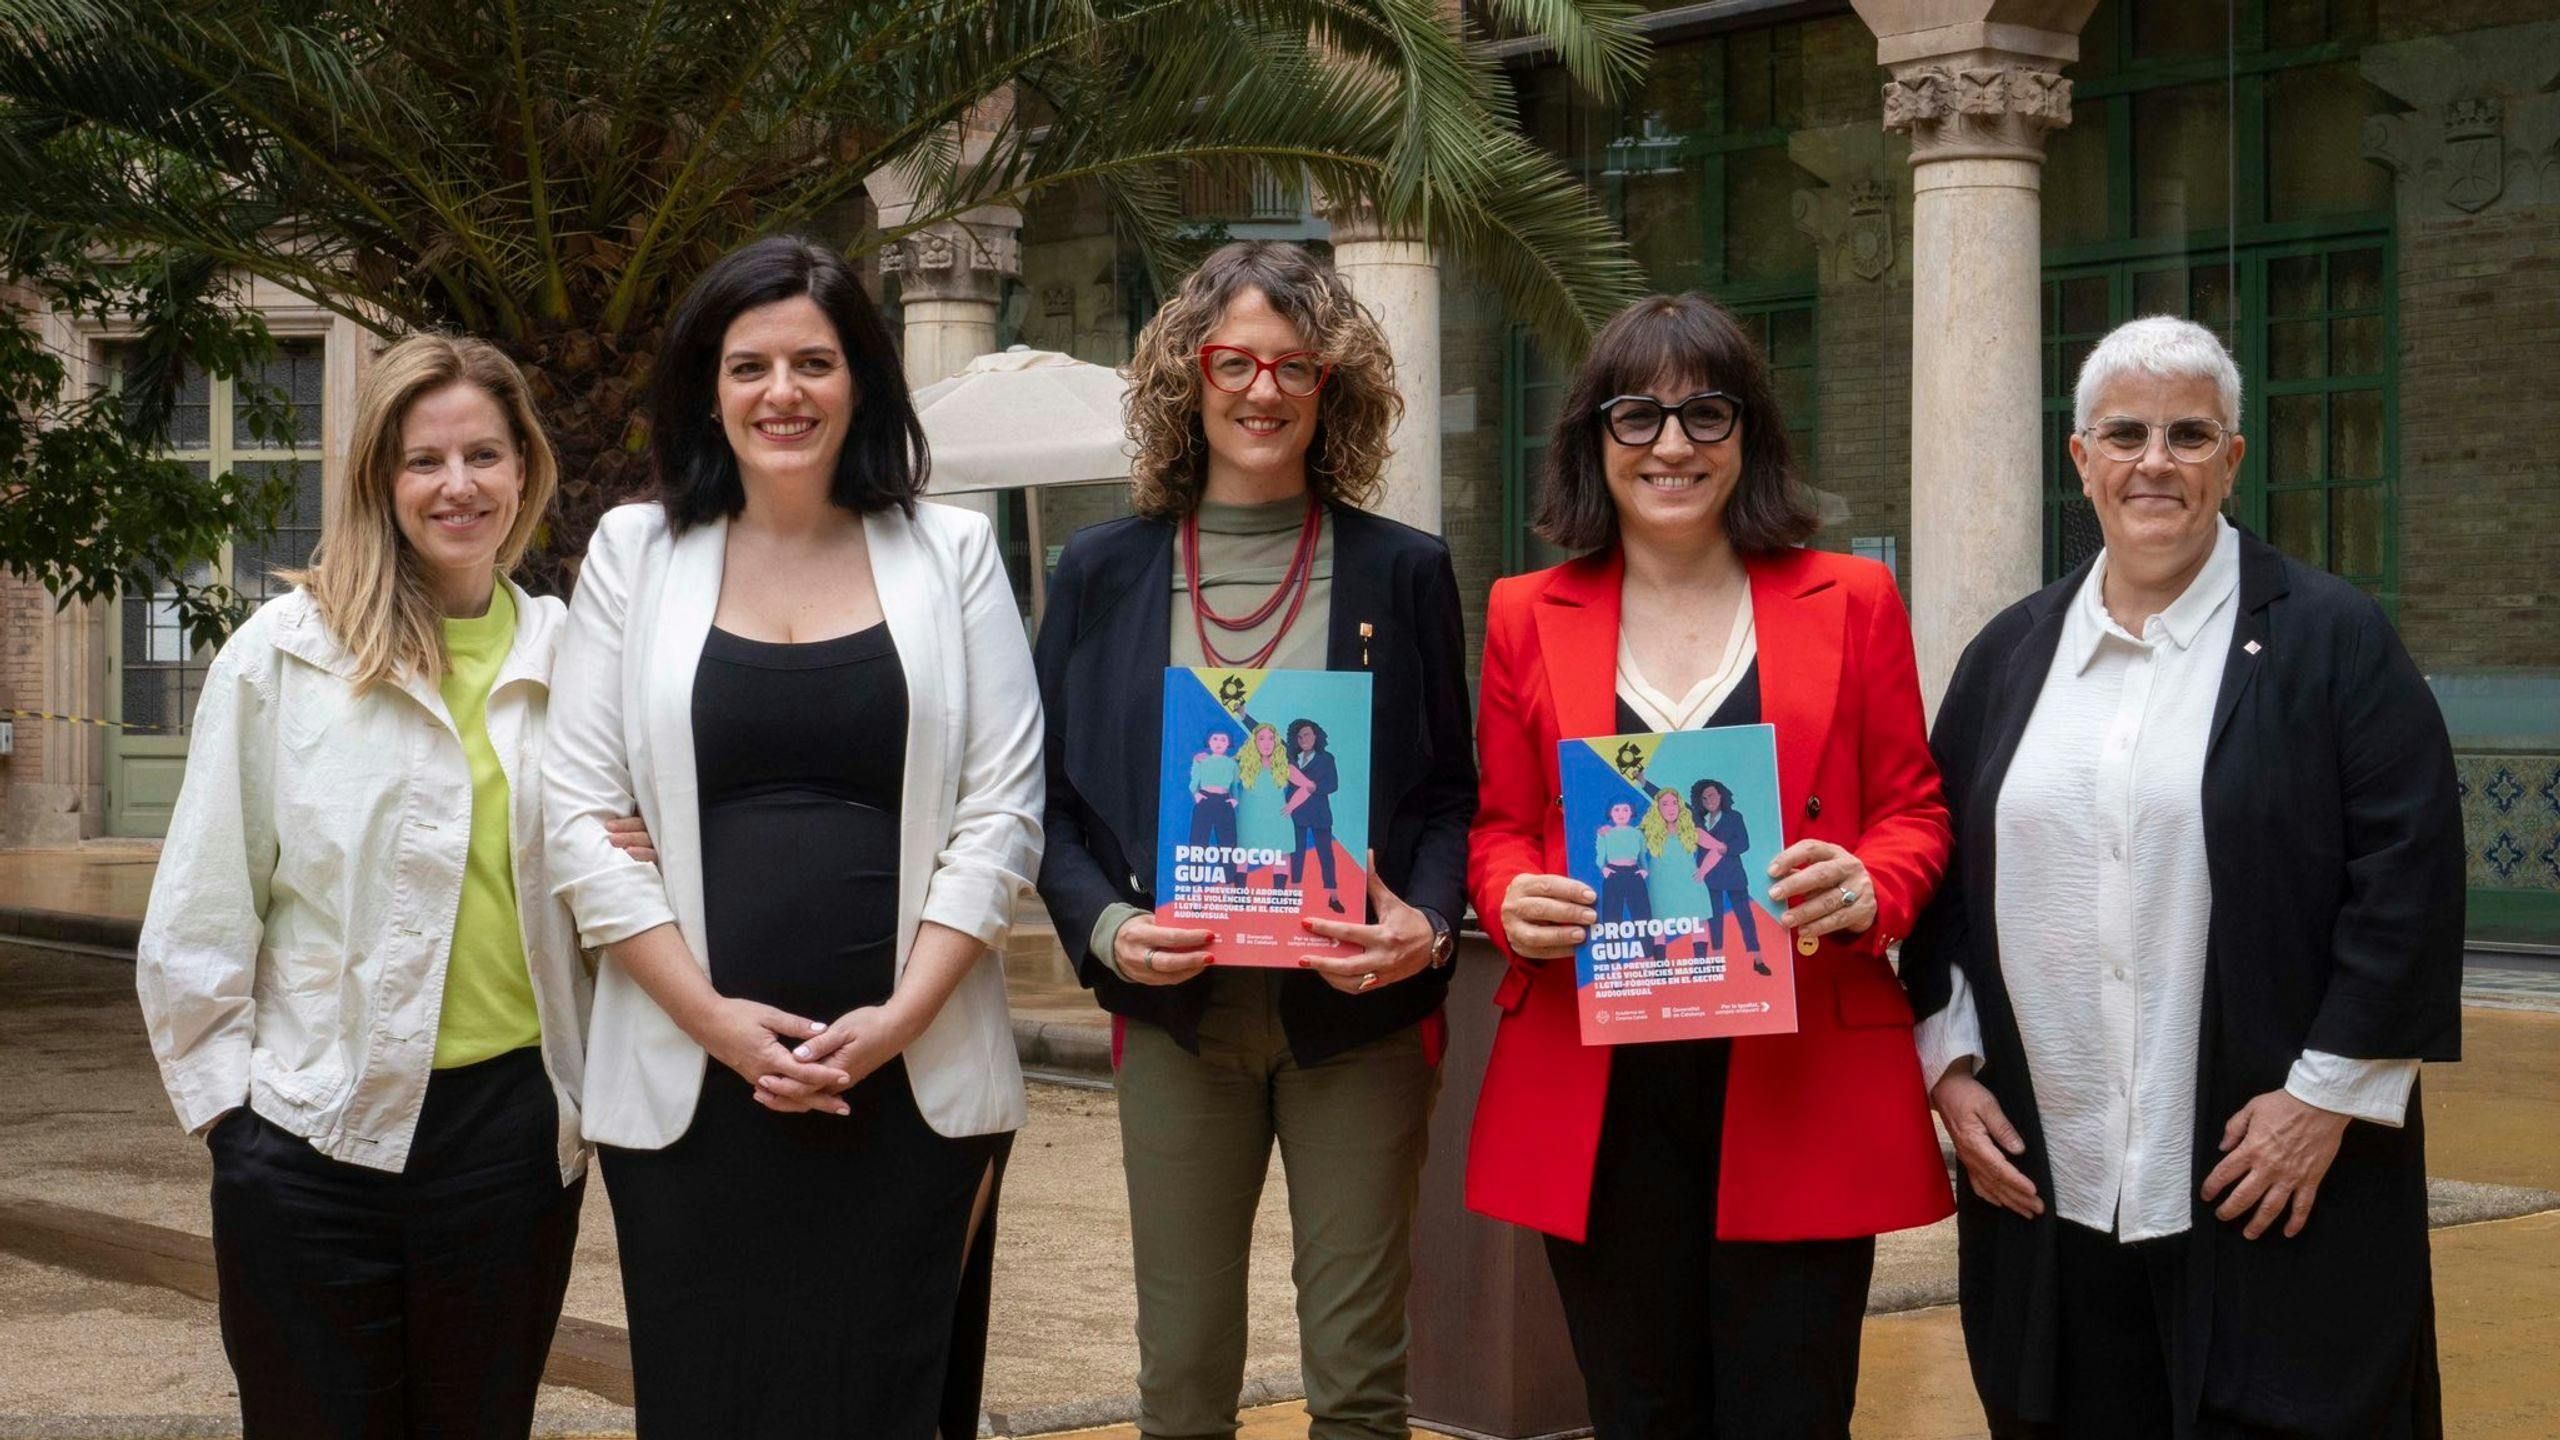 Presentación del Protocolo guía para la prevención de las violencias machistas y LGTBi-fóbicas, con la consellera Tània Verge y la presidenta de la Acadèmia del Cinema Catalá, Judith Colell, en el centro